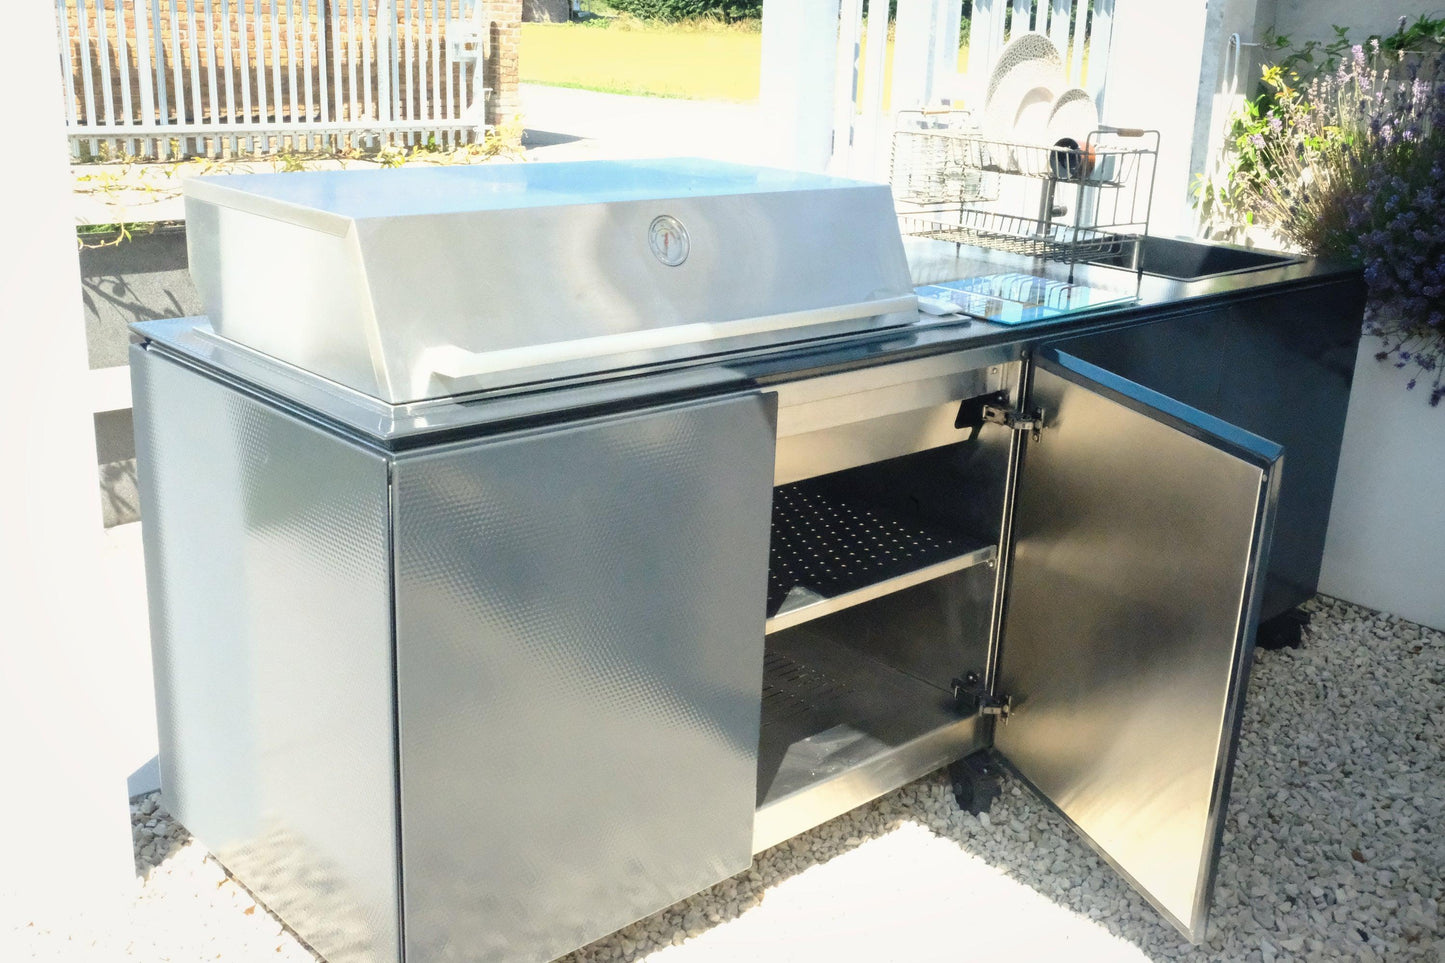 Ex Display Vlaze ADAPT 240 Outdoor Kitchen with ProLine BBQ & Sink - Garden House Design